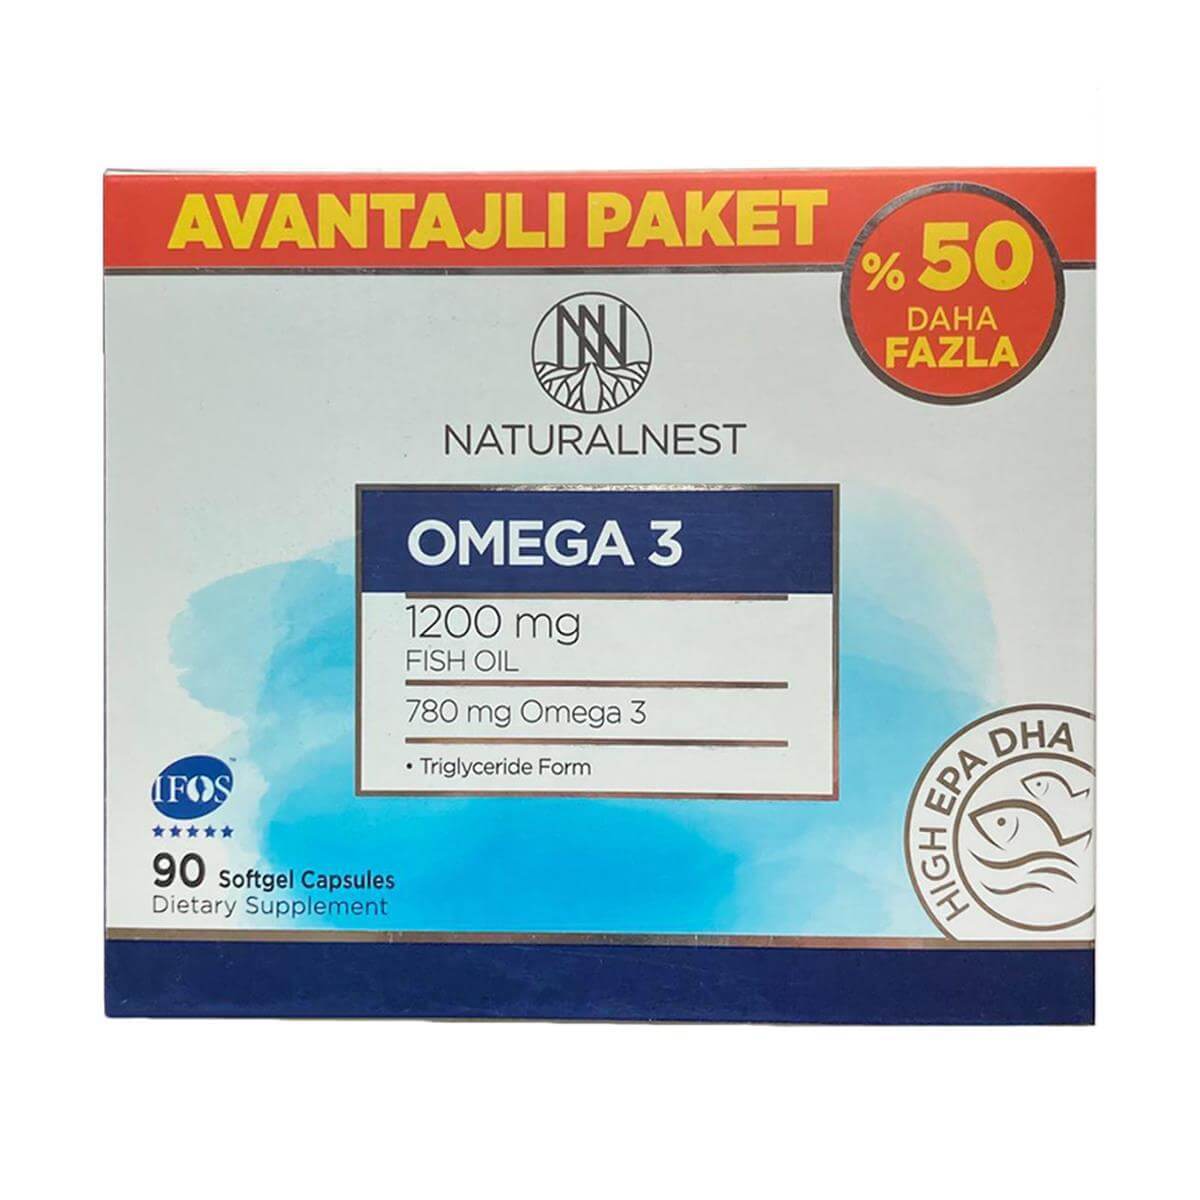 Naturalnest Omega 3 Takviye Edici Gıda 90 Kapsül - Avantajlı Paket - Farmareyon